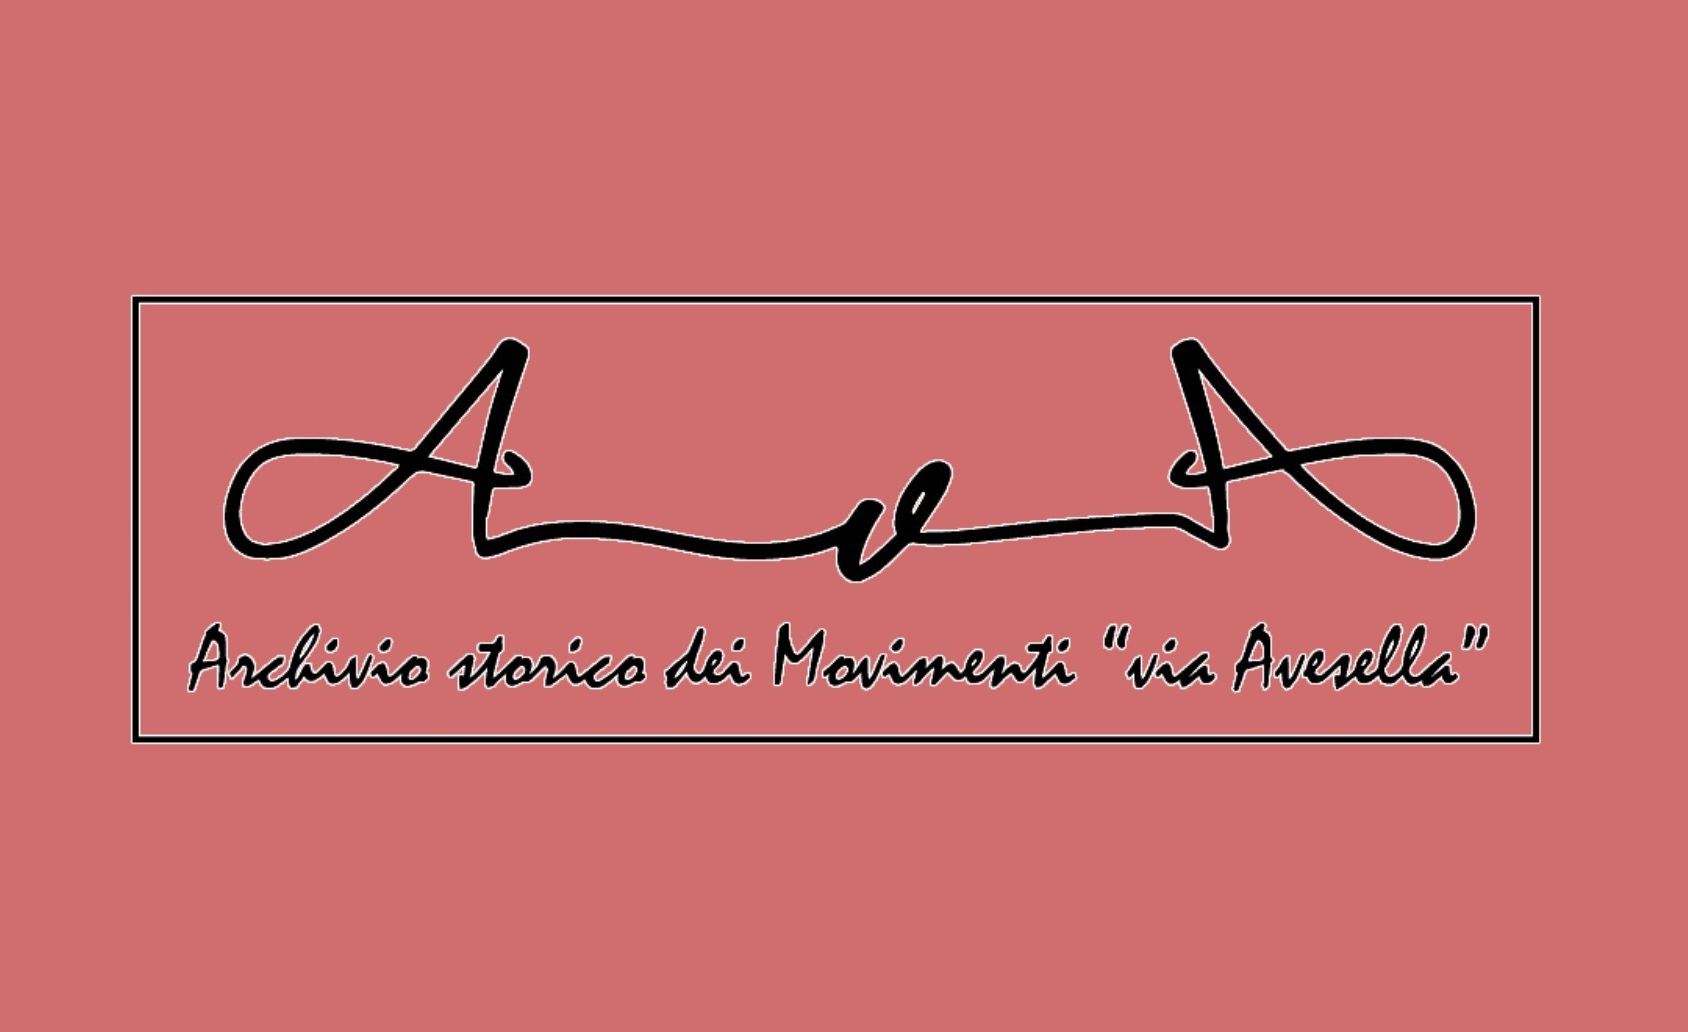 Un archivio storico dei movimenti sociali in Via Avesella 5/A